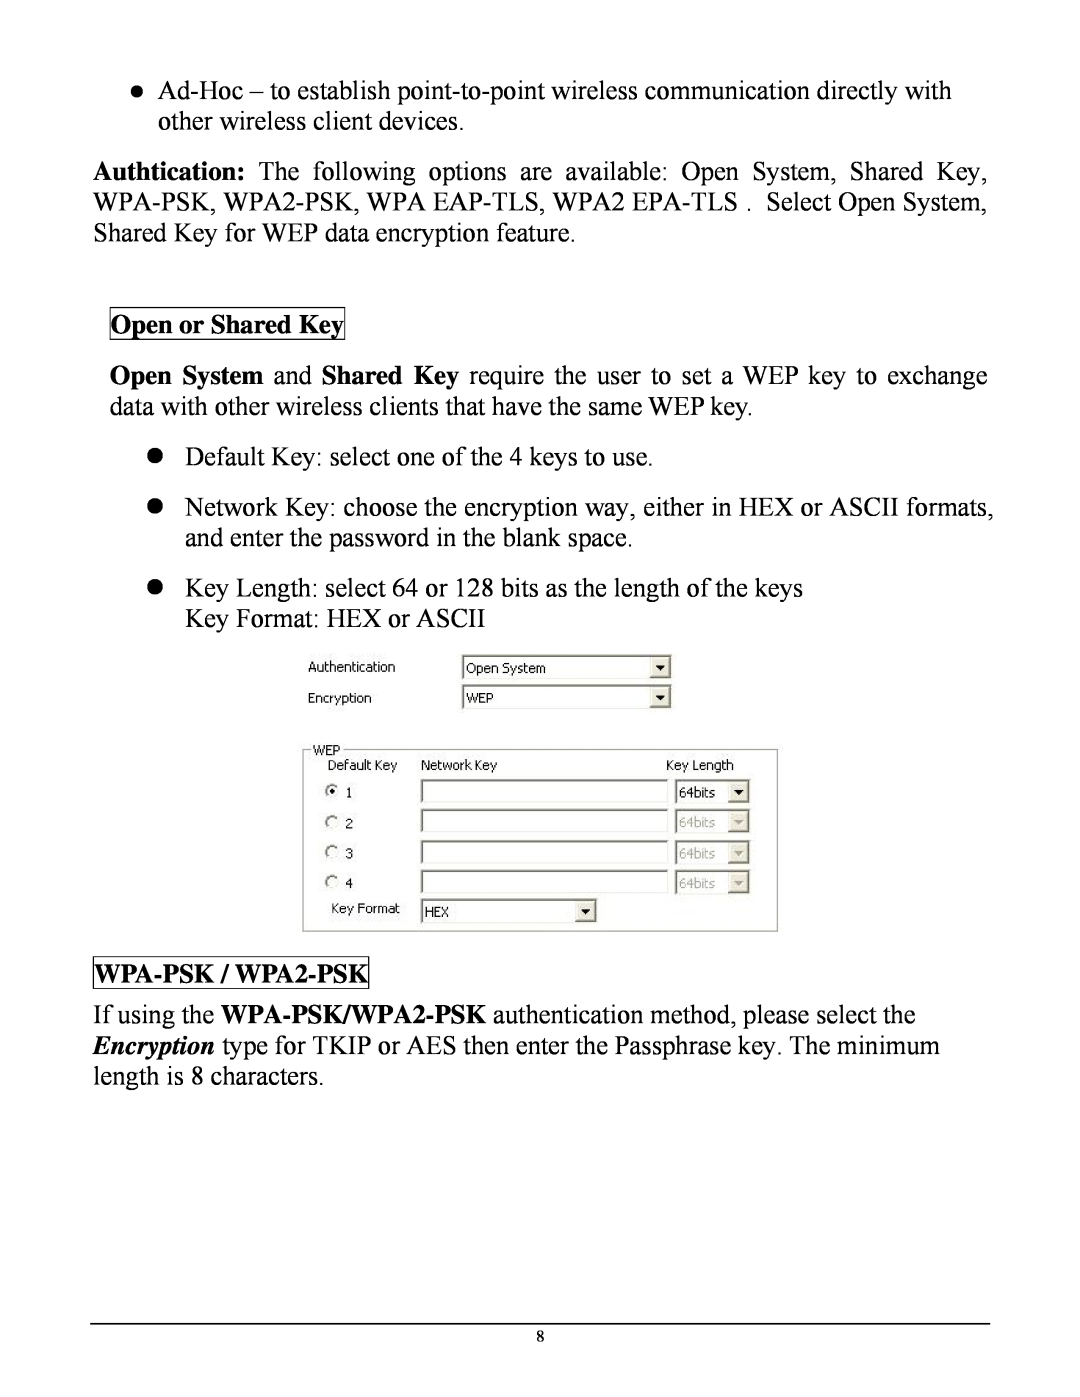 TRENDnet TEW-641PC manual Open or Shared Key, WPA-PSK / WPA2-PSK 